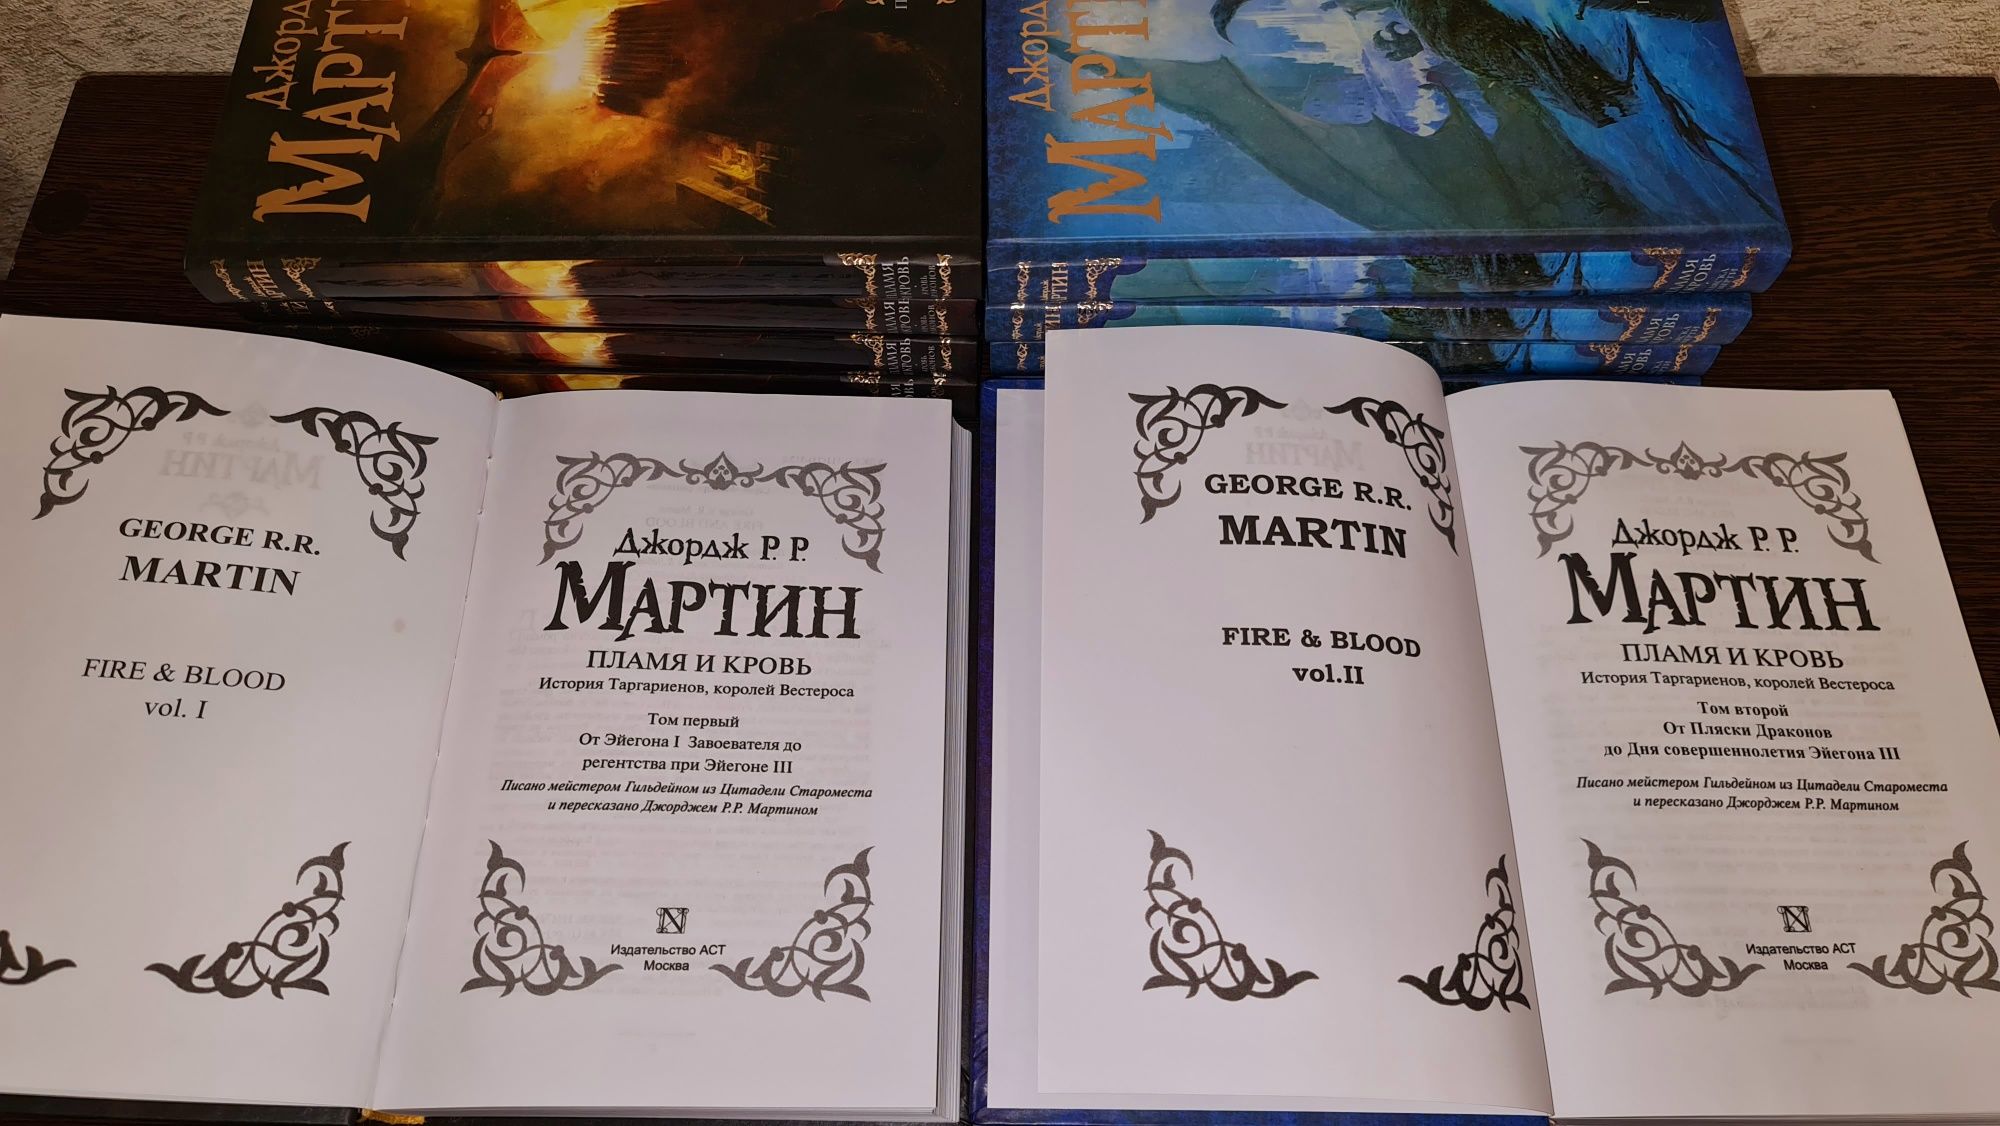 + Игры Престолов на русском языке и другие книги.